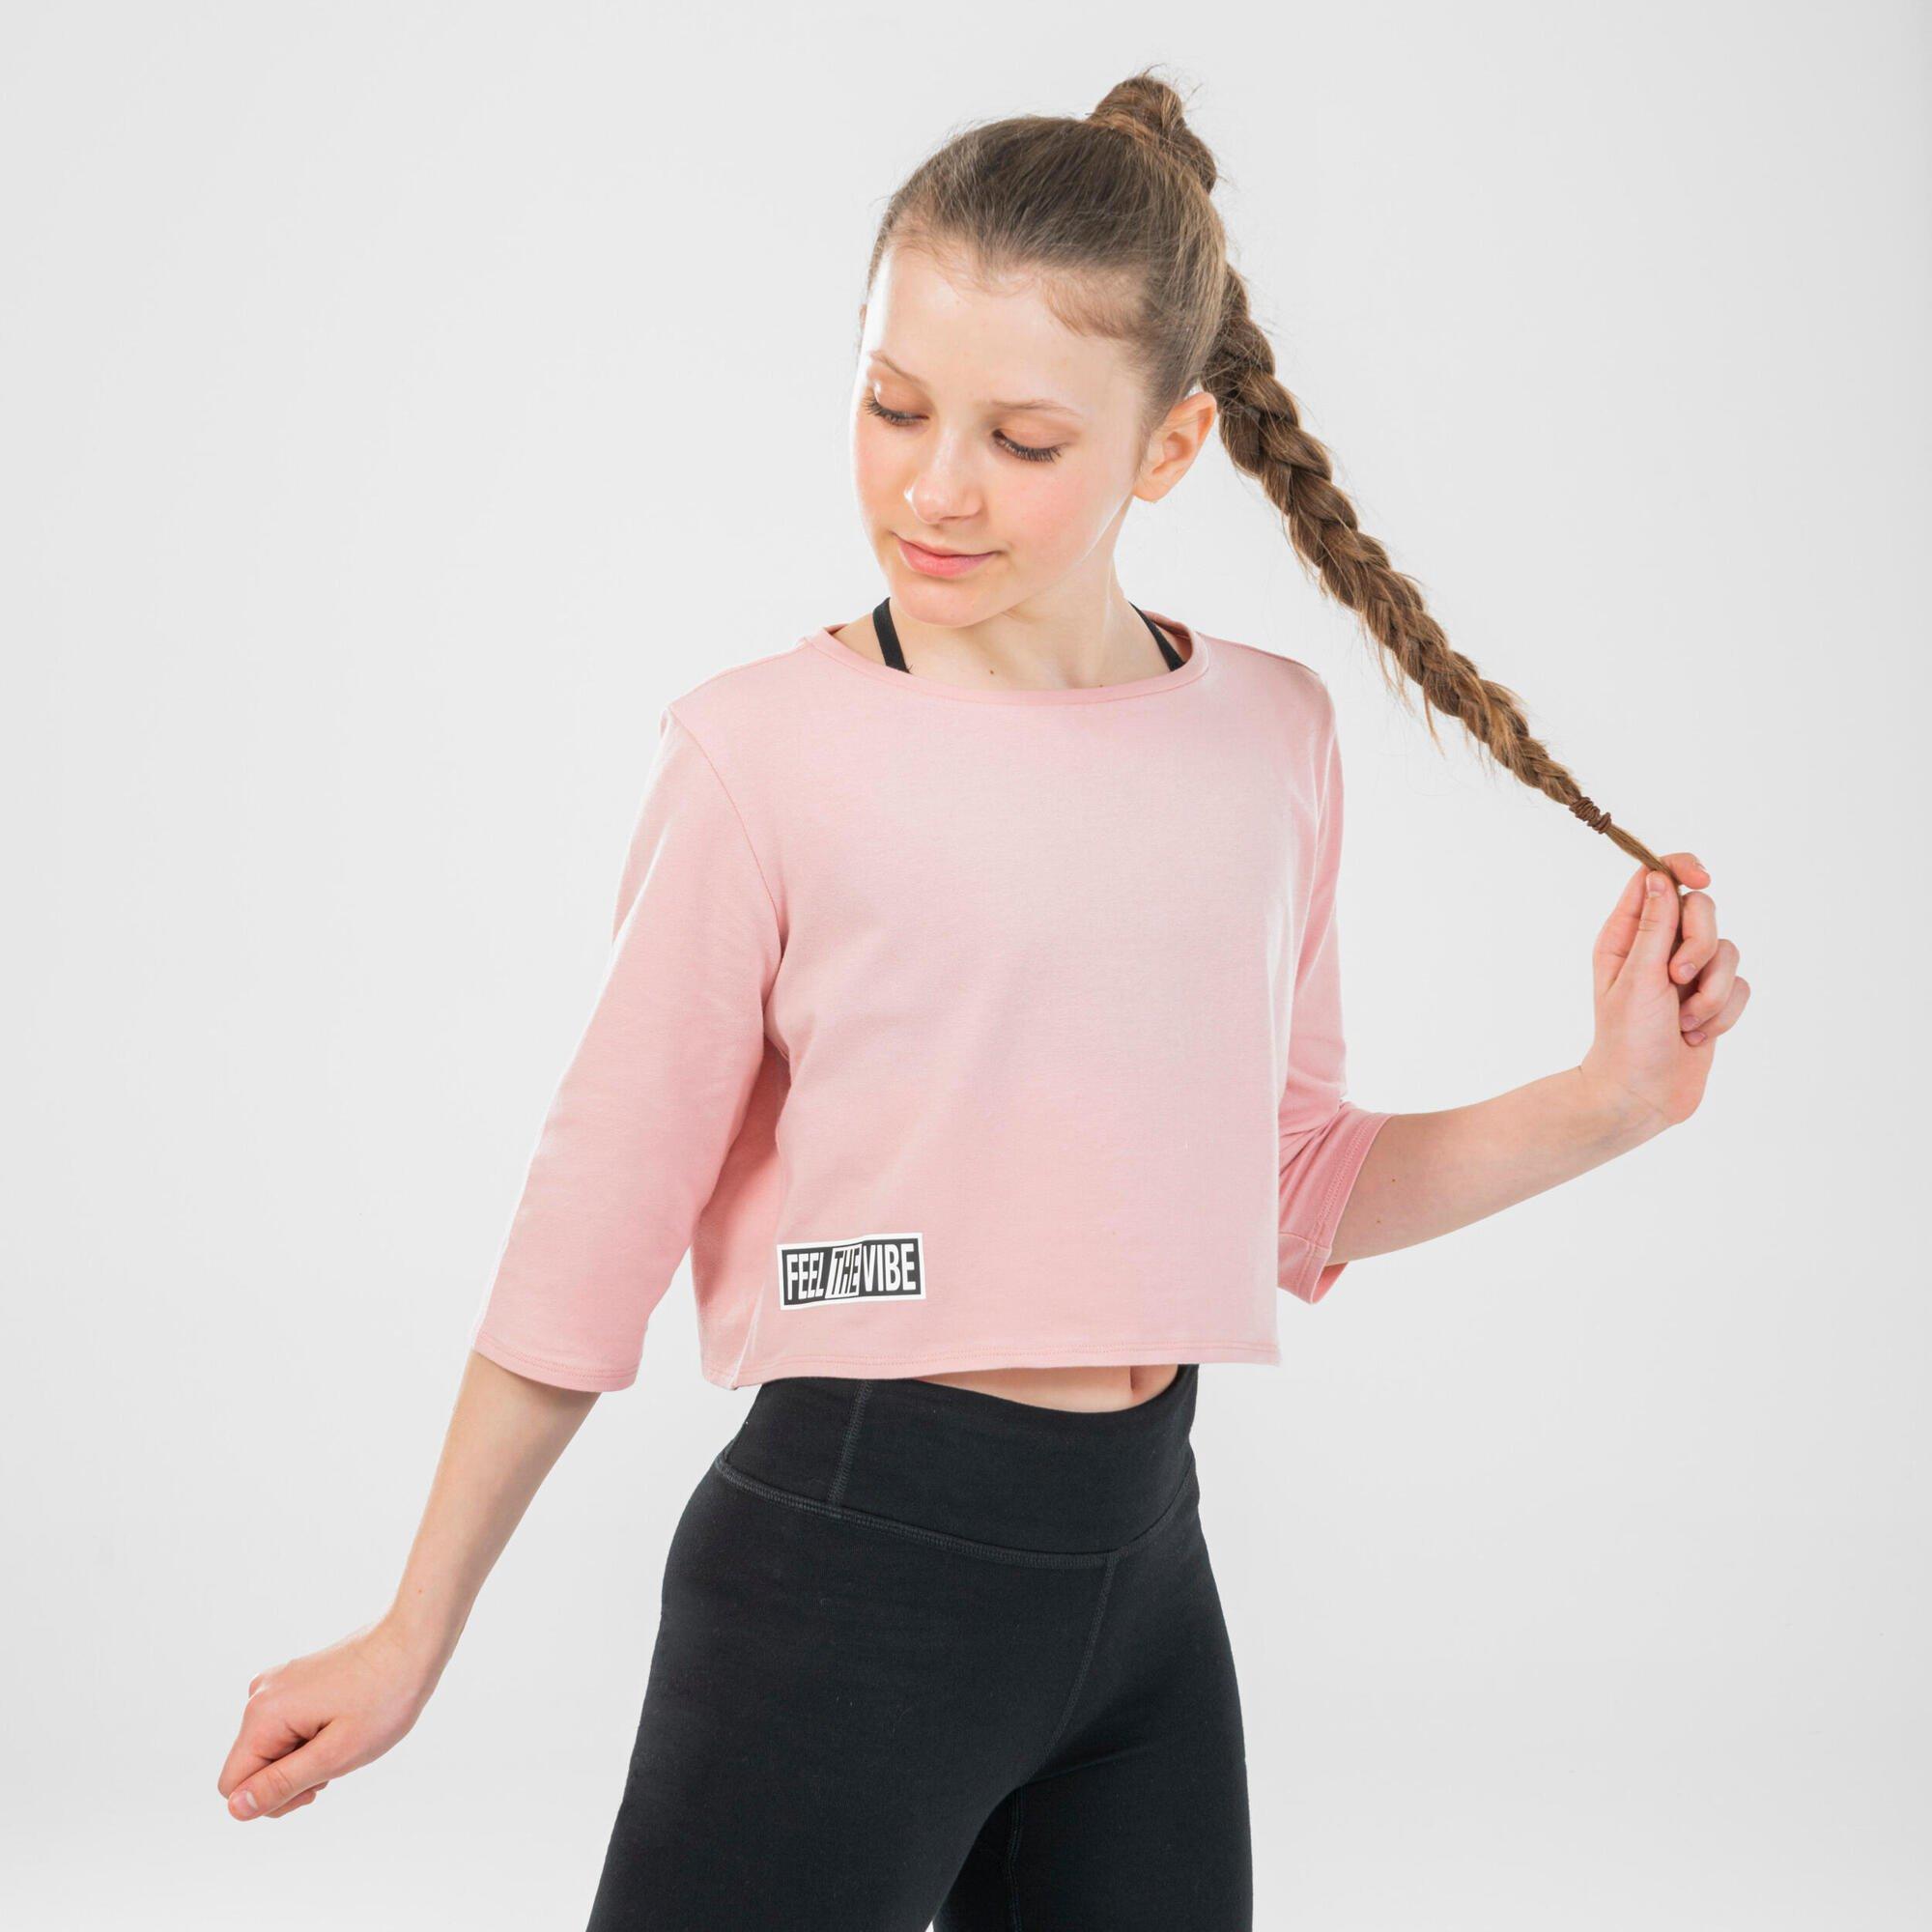 Decathlon Girls’ Modern Dance Cropped T-Shirt